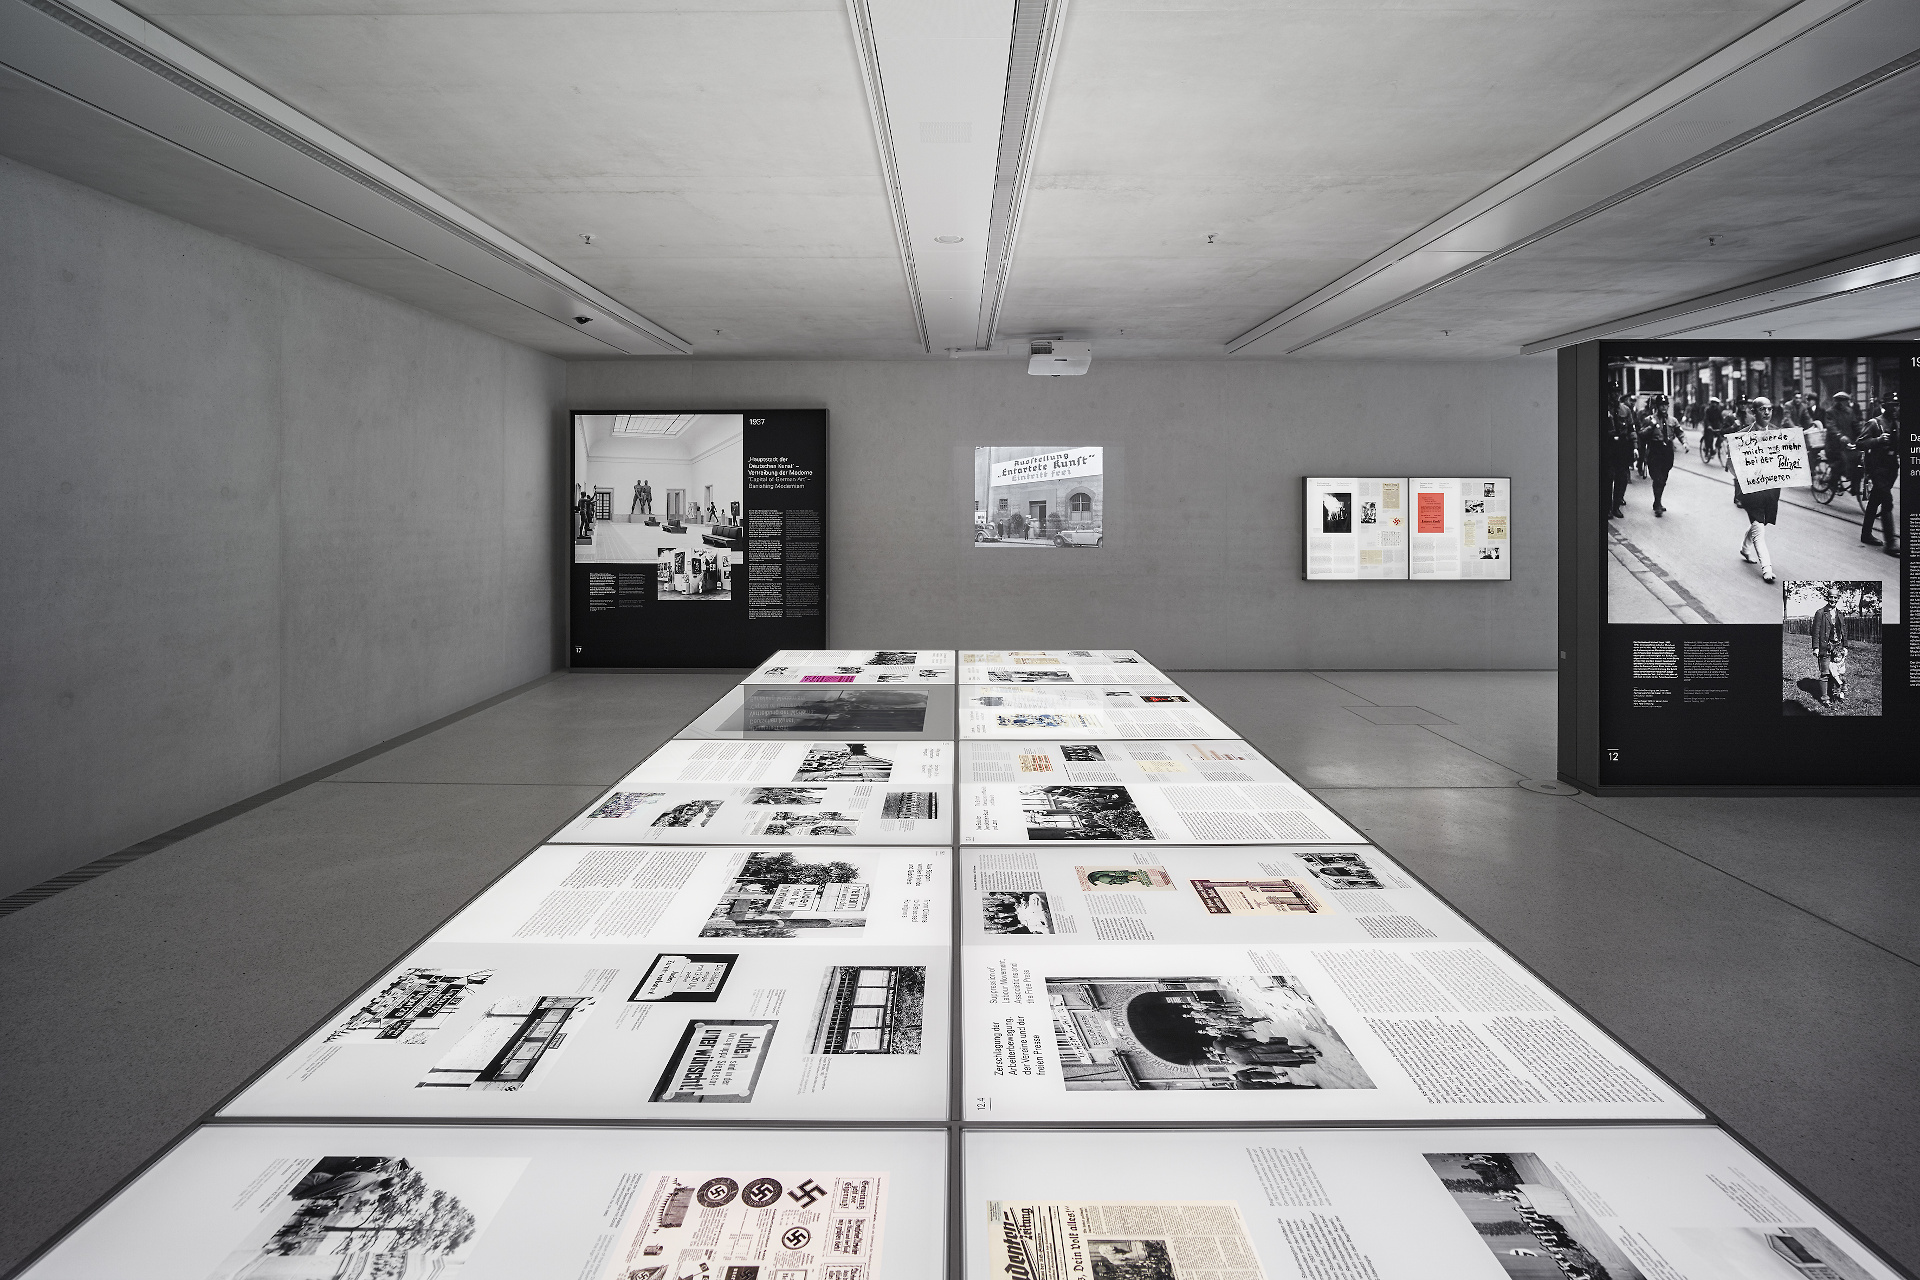 窓のない大きな部屋に並べられた複数の展示台と、文章や写真が印刷された大型の展示パネル。壁には映像が映されている。